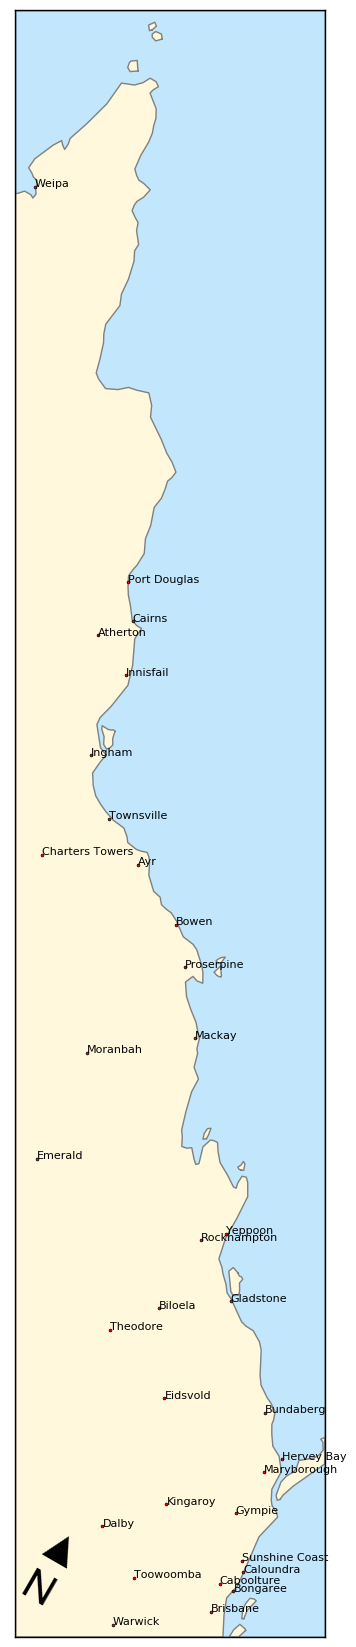 GeoPandas Strip Map